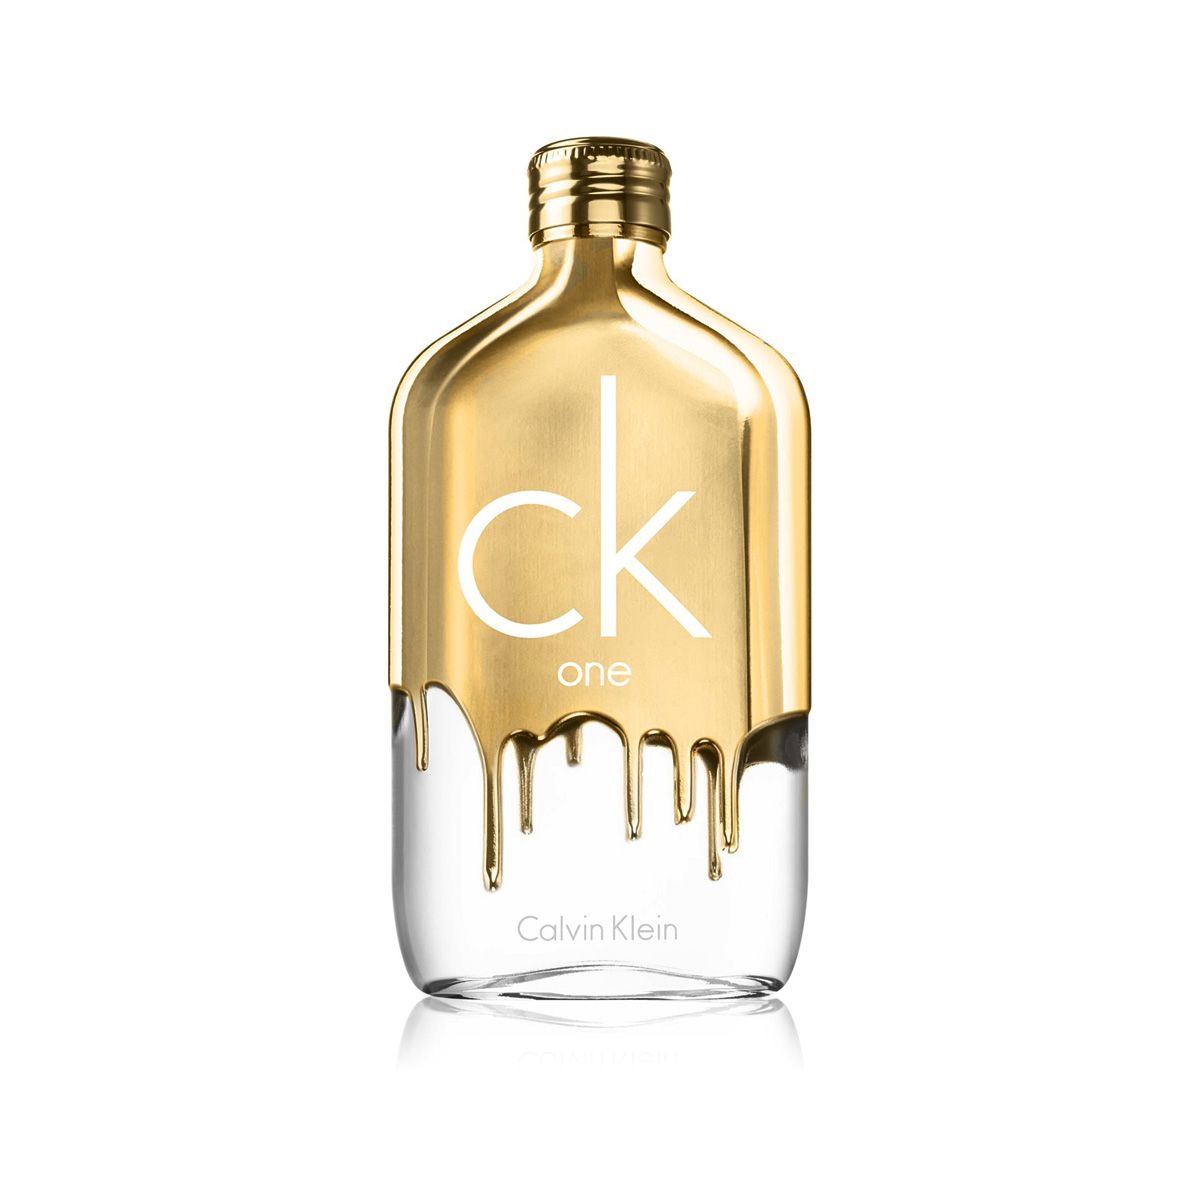 Calvin Klein CK One Gold - EDT 100ml – Nước Hoa Chính Hãng - Authentic